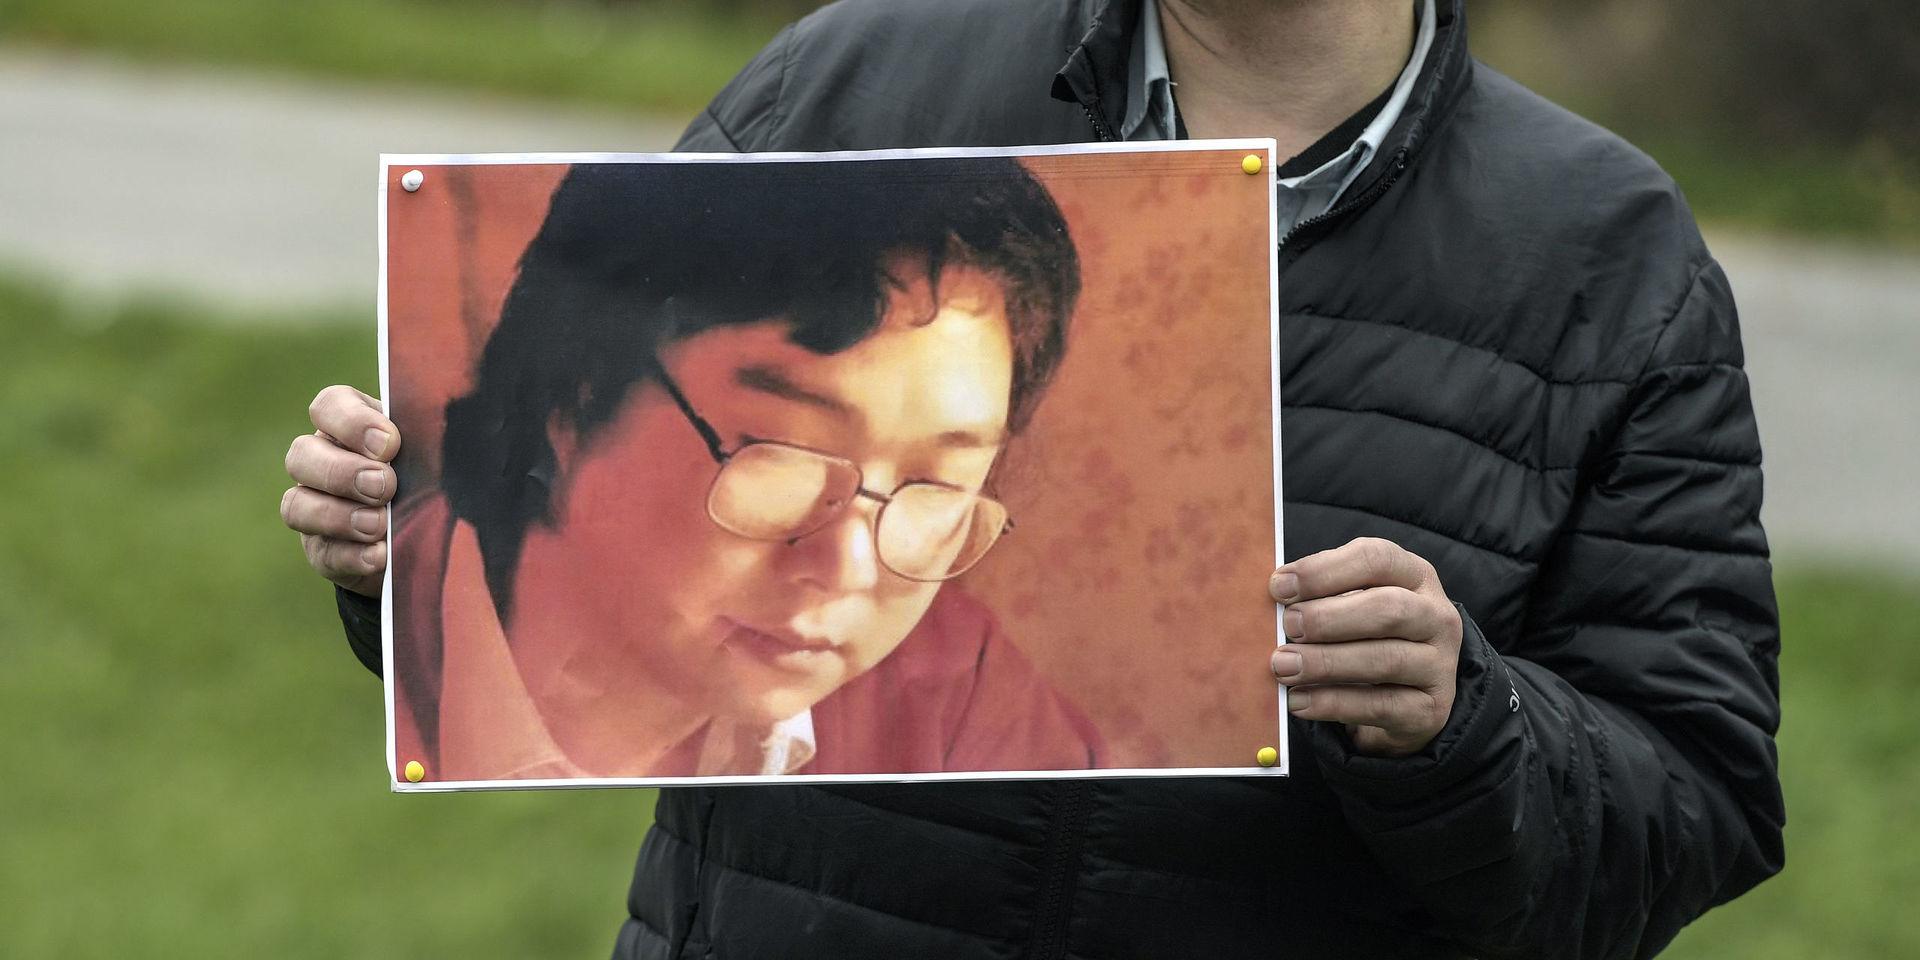 Journalistförbund, Förläggareföreningen, Författarförbund och Svenska Pen arrangerade en stödmanifestation utanför Kinas ambassad för den svensk-kinesiske förläggaren Gui Minhai som då varit frihetsberövad i Kina i tre år.